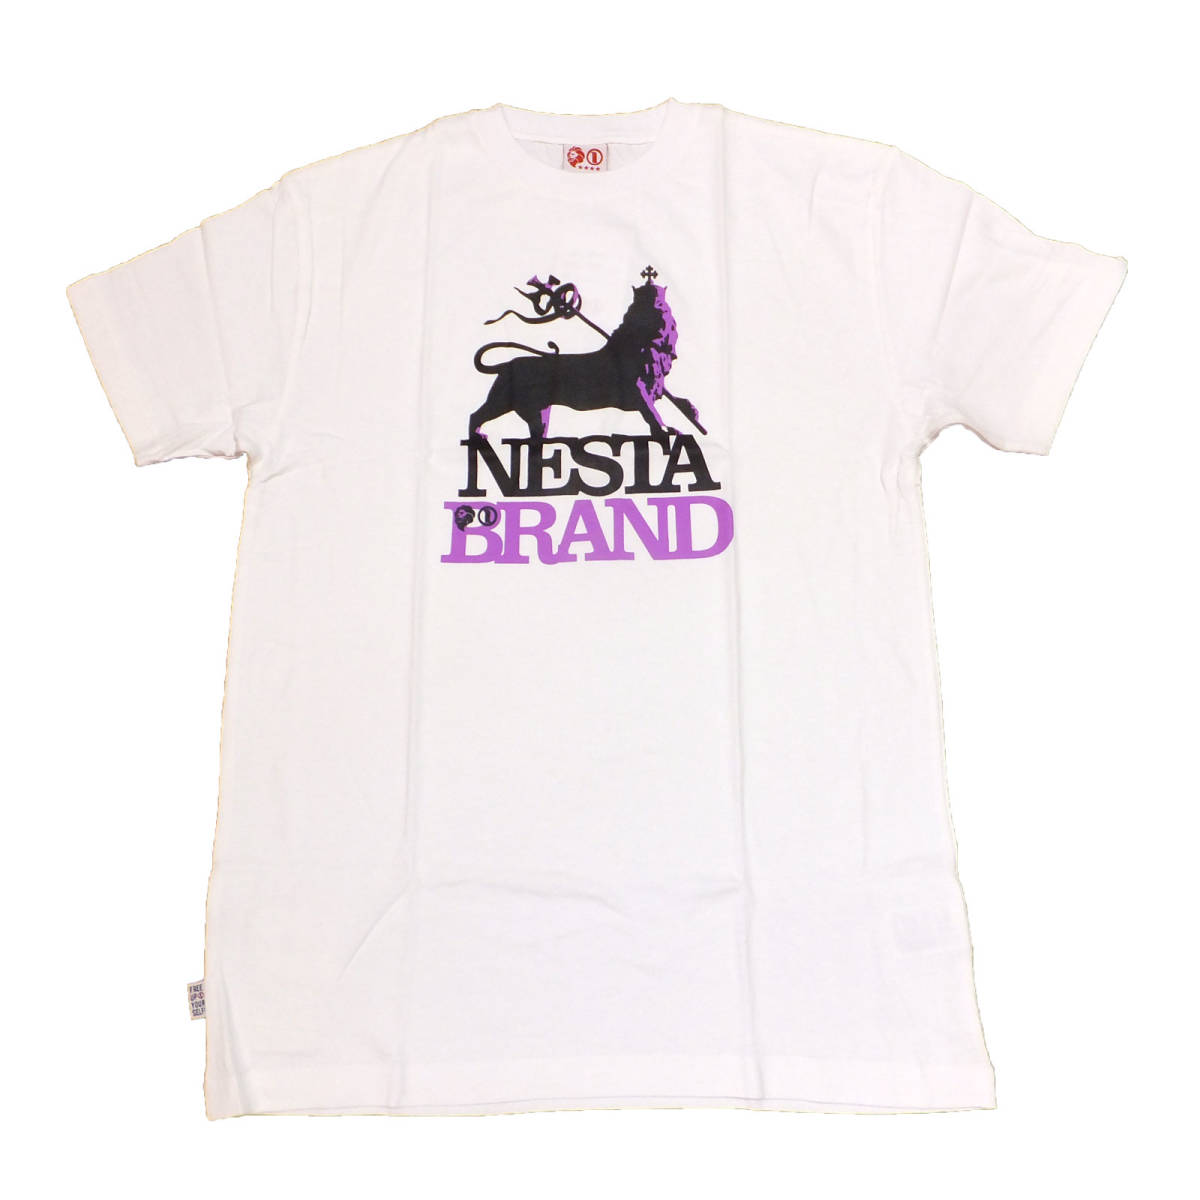 【送料無料】新品NESTA BRAND Tシャツ ネスタブランド正規品W-022 Sサイズ レゲエ ヒップホップ ダンス ストリート系 ライオン_画像1